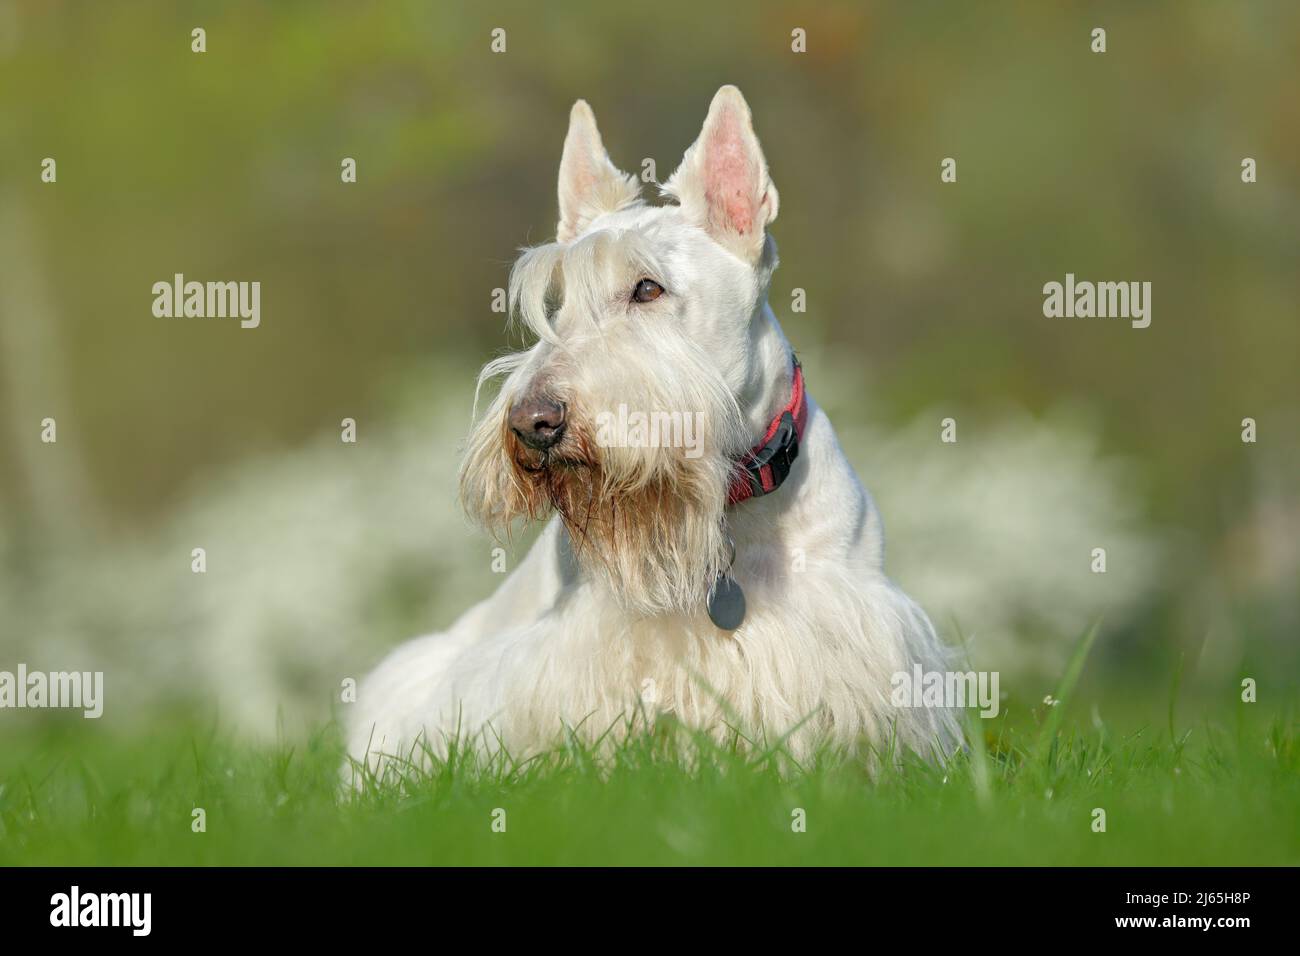 Blanco, terrier escocés del wheaten, perro lindo en césped verde de la hierba, flor blanca en el fondo, Escocia, Reino Unido Foto de stock